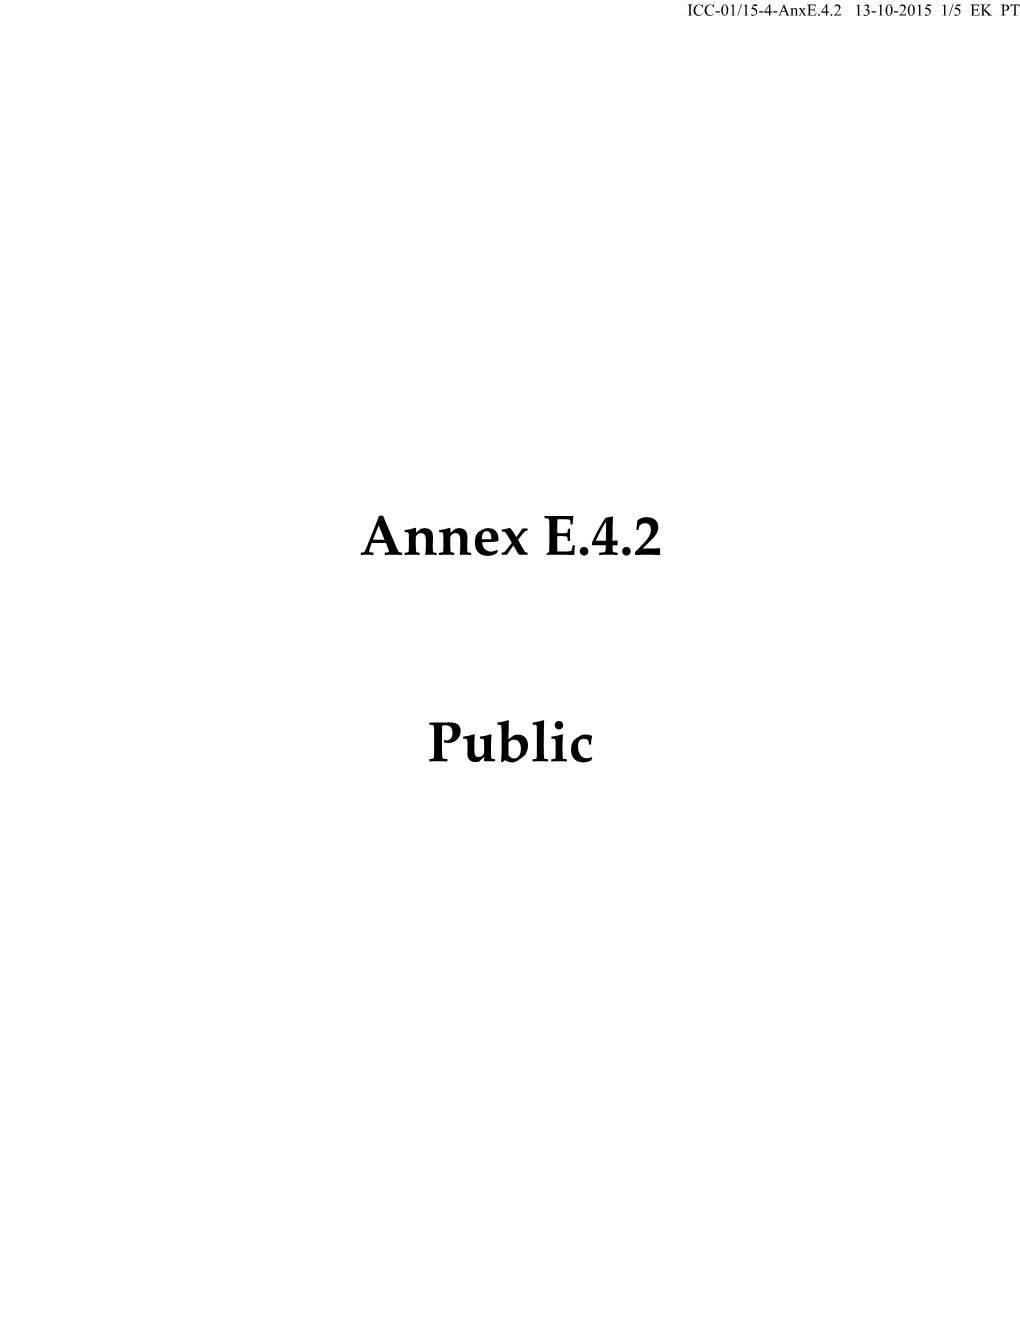 Annex E.4.2 Public